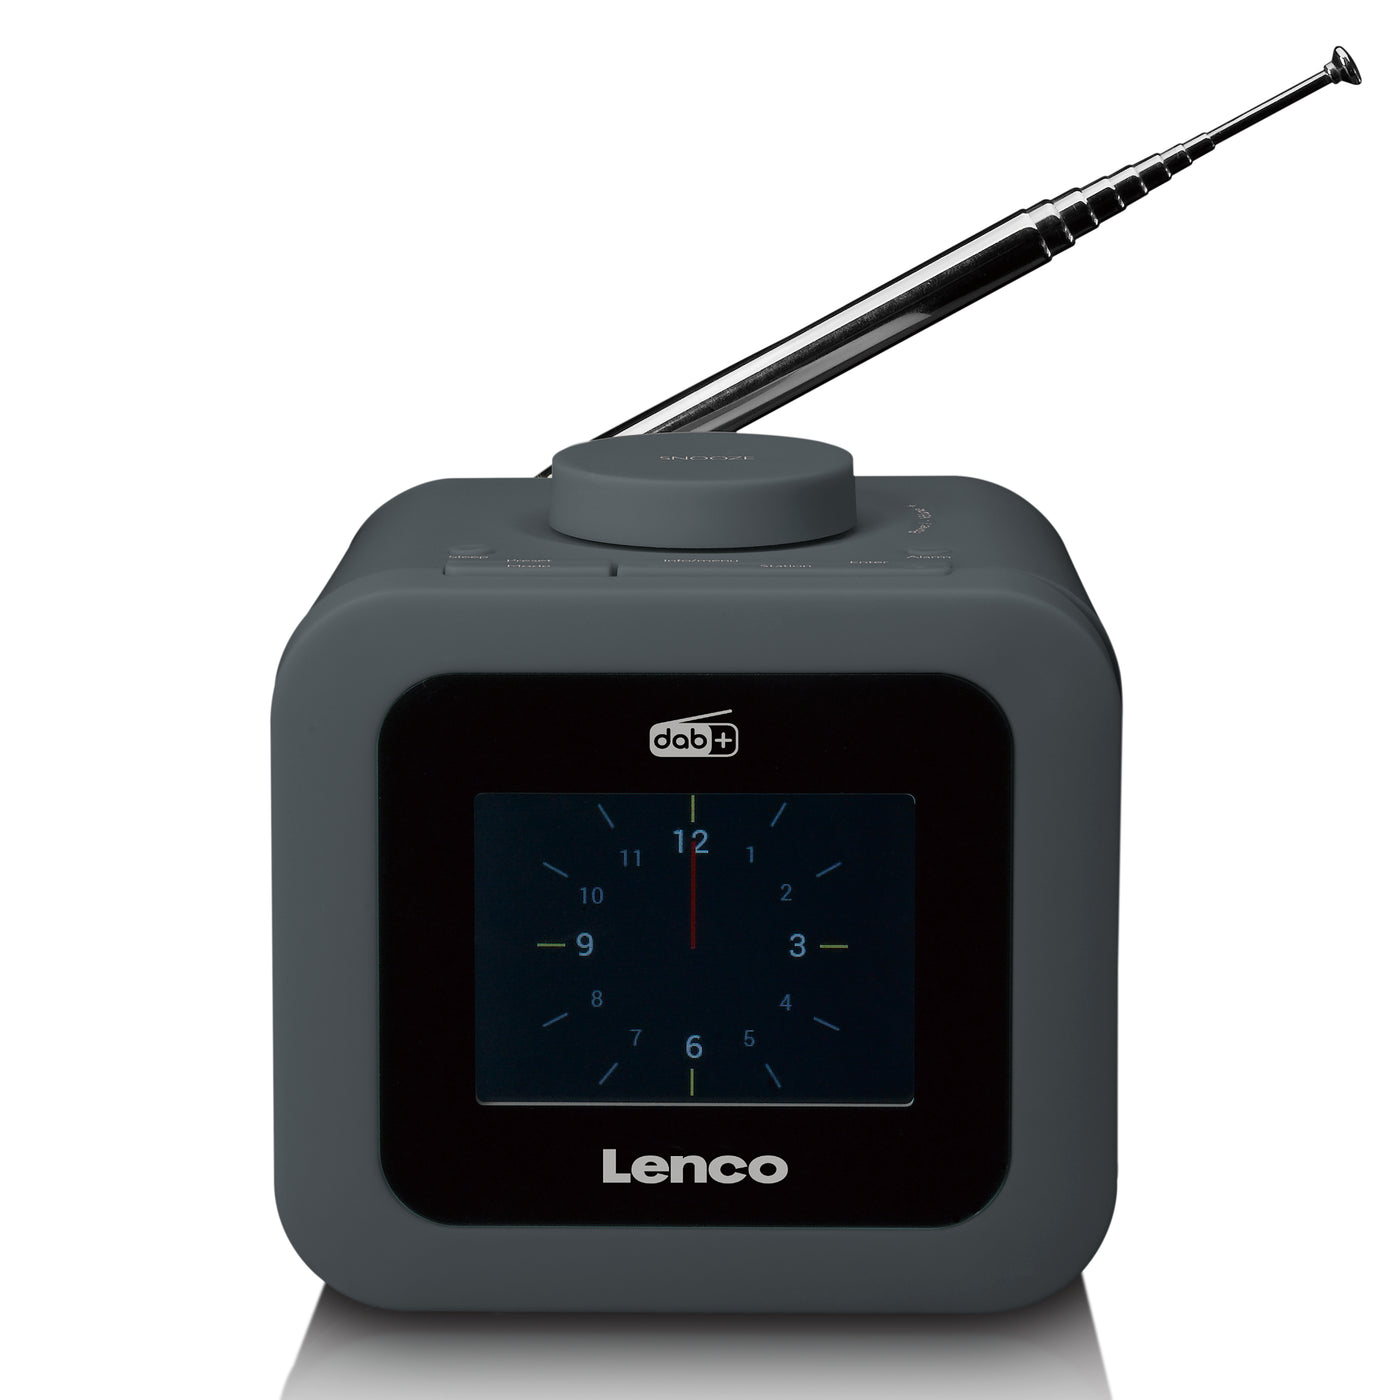 LENCO CR-620GY - DAB+/FM Wekkerradio met een kleuren display - Grijs